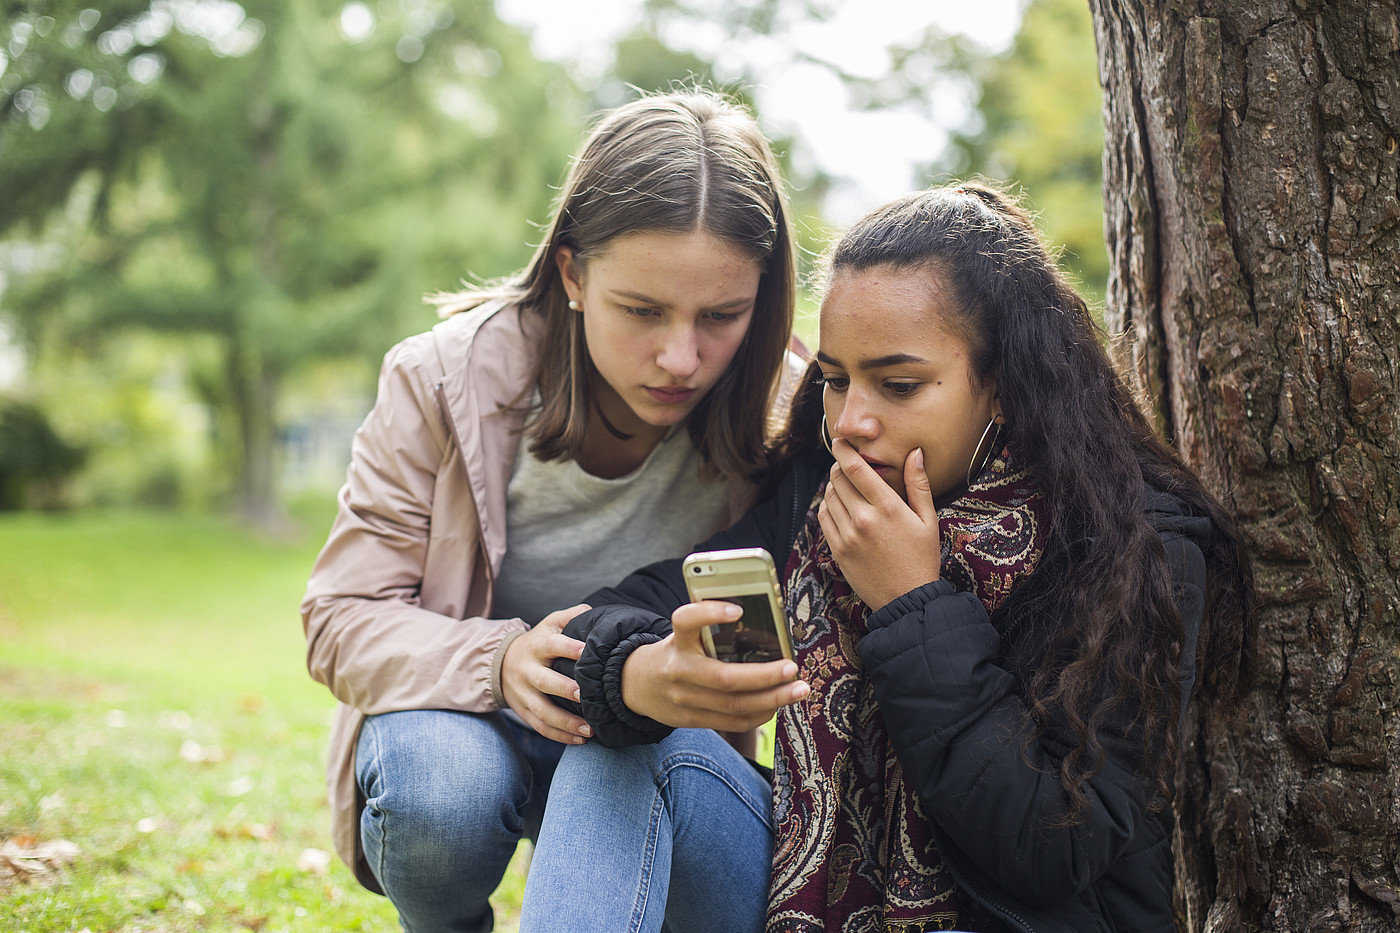 Deux adolescents à l'extérieur regardent un téléphone portable d'un air choqué.